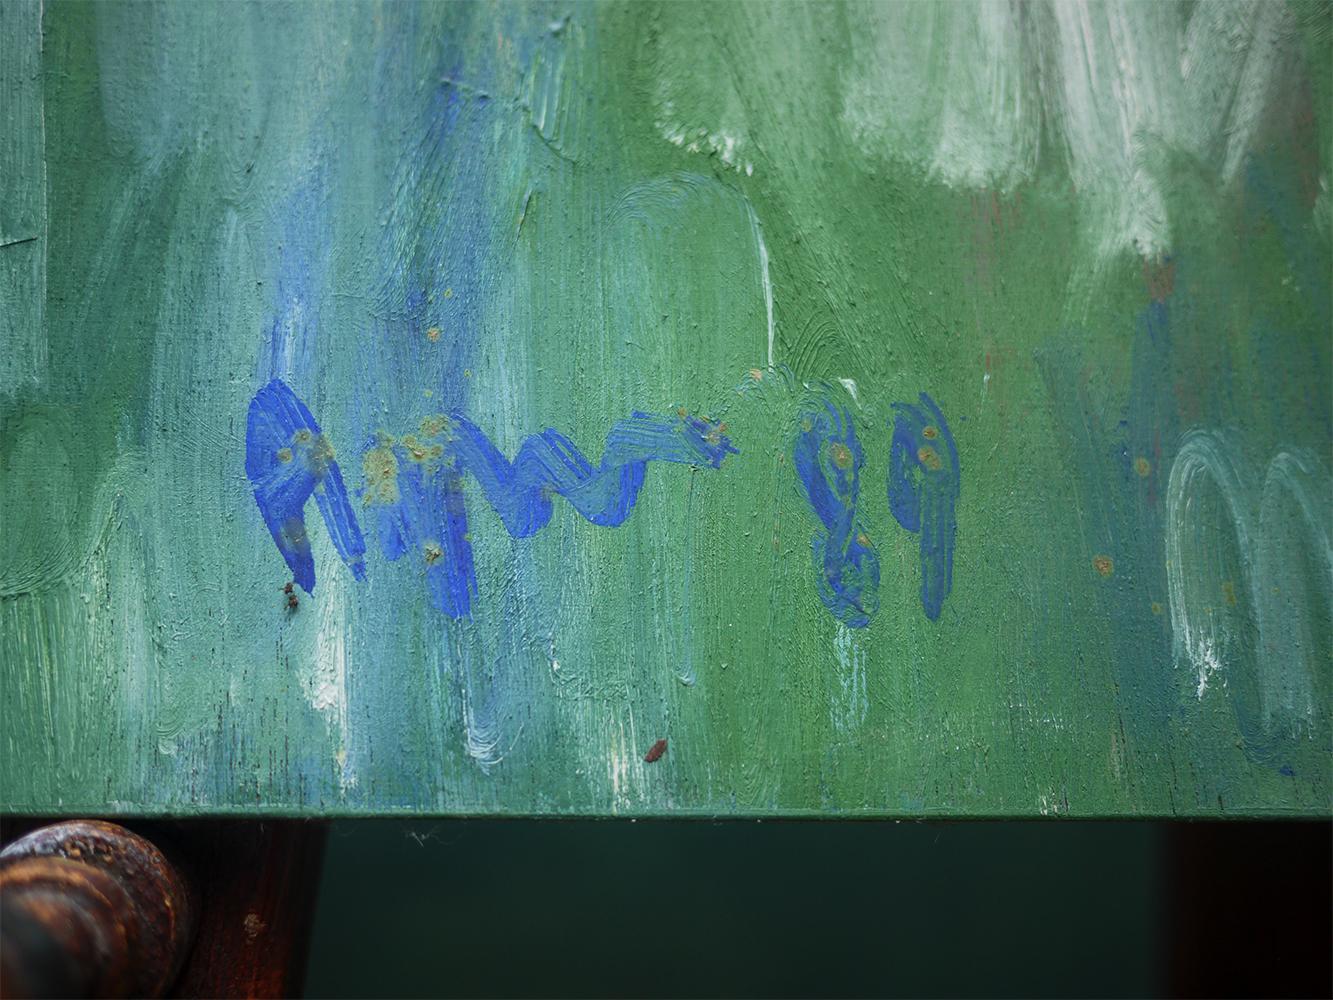 Agner, Hans Peter, Cascade de couleurs, 1989

Mesures : cm80 x cm66

Huile sur panneau

Composition abstraite dans laquelle des coups de pinceau blancs, verts, bleus et rouges se poursuivent les uns les autres. L'effet est celui d'une scène